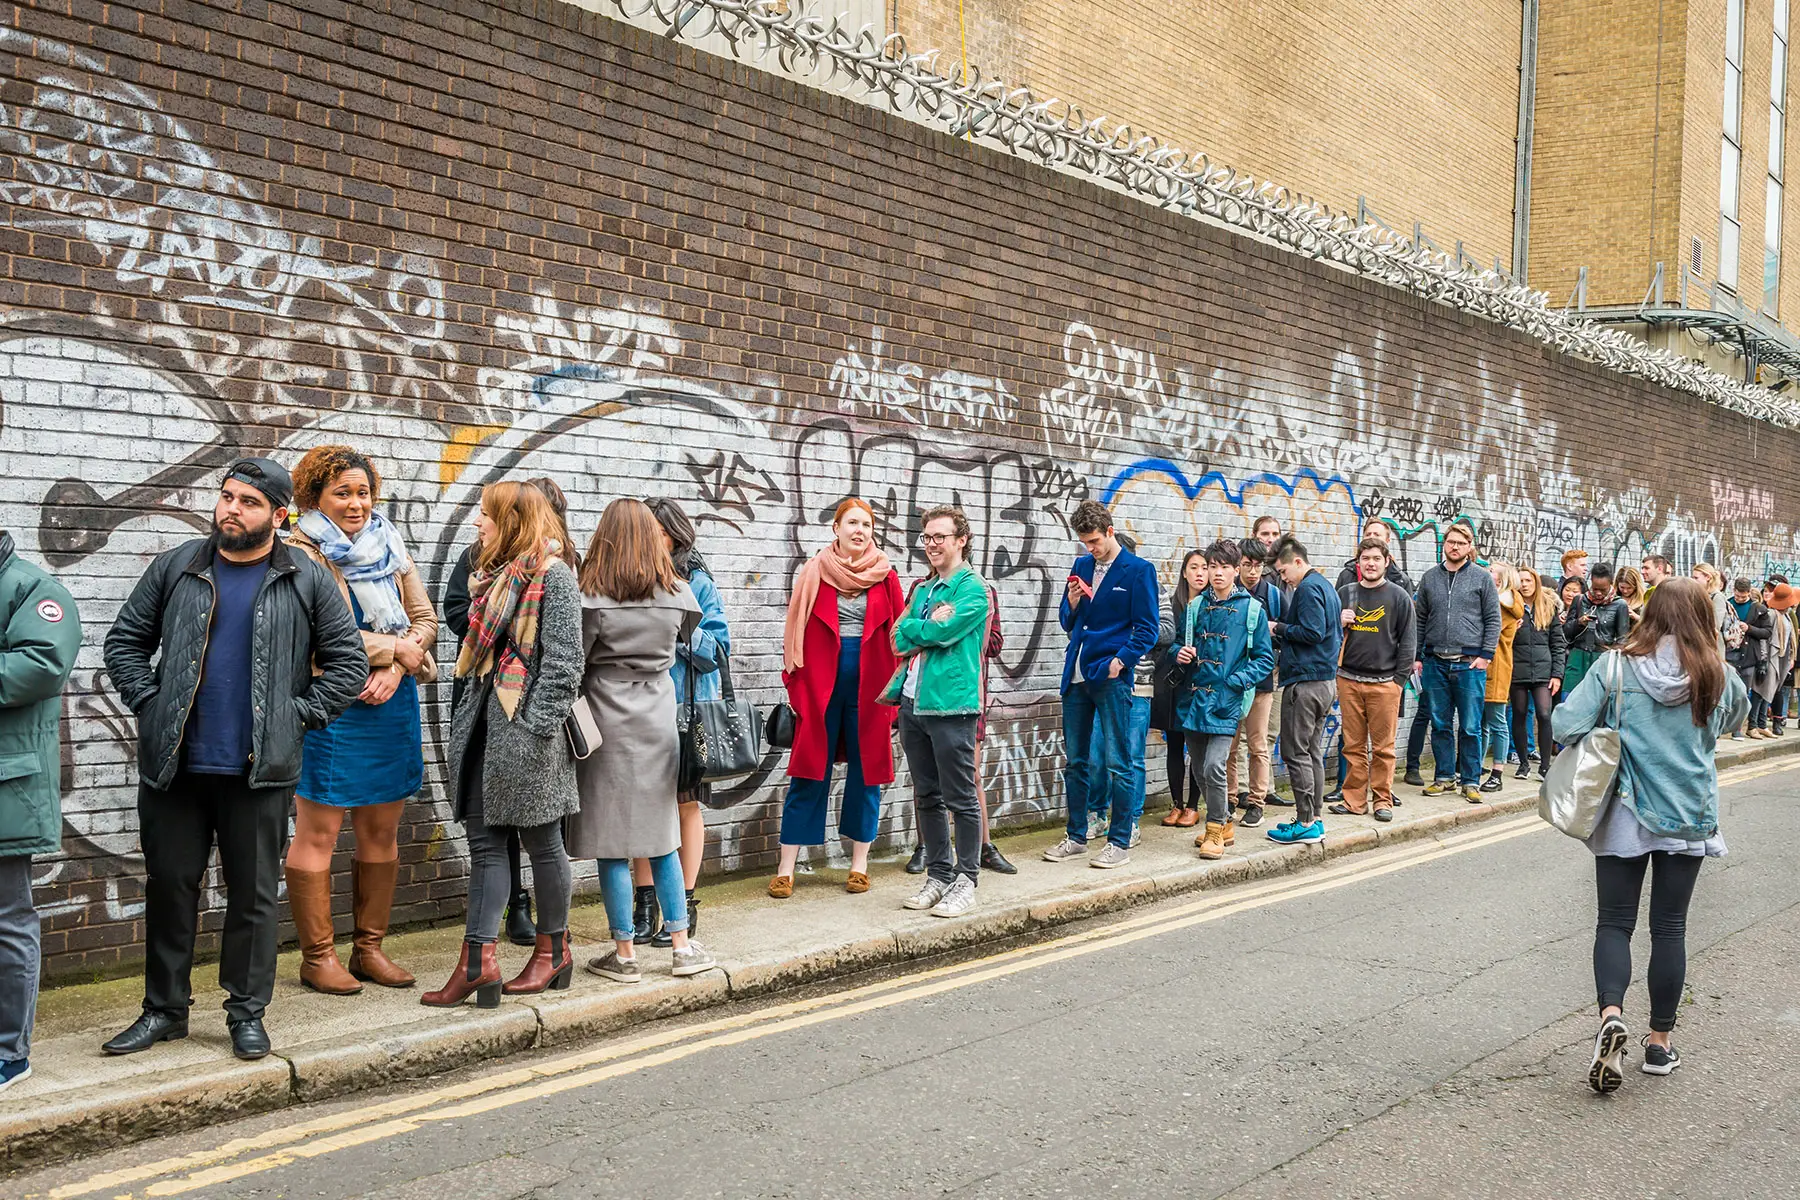 A queue in London